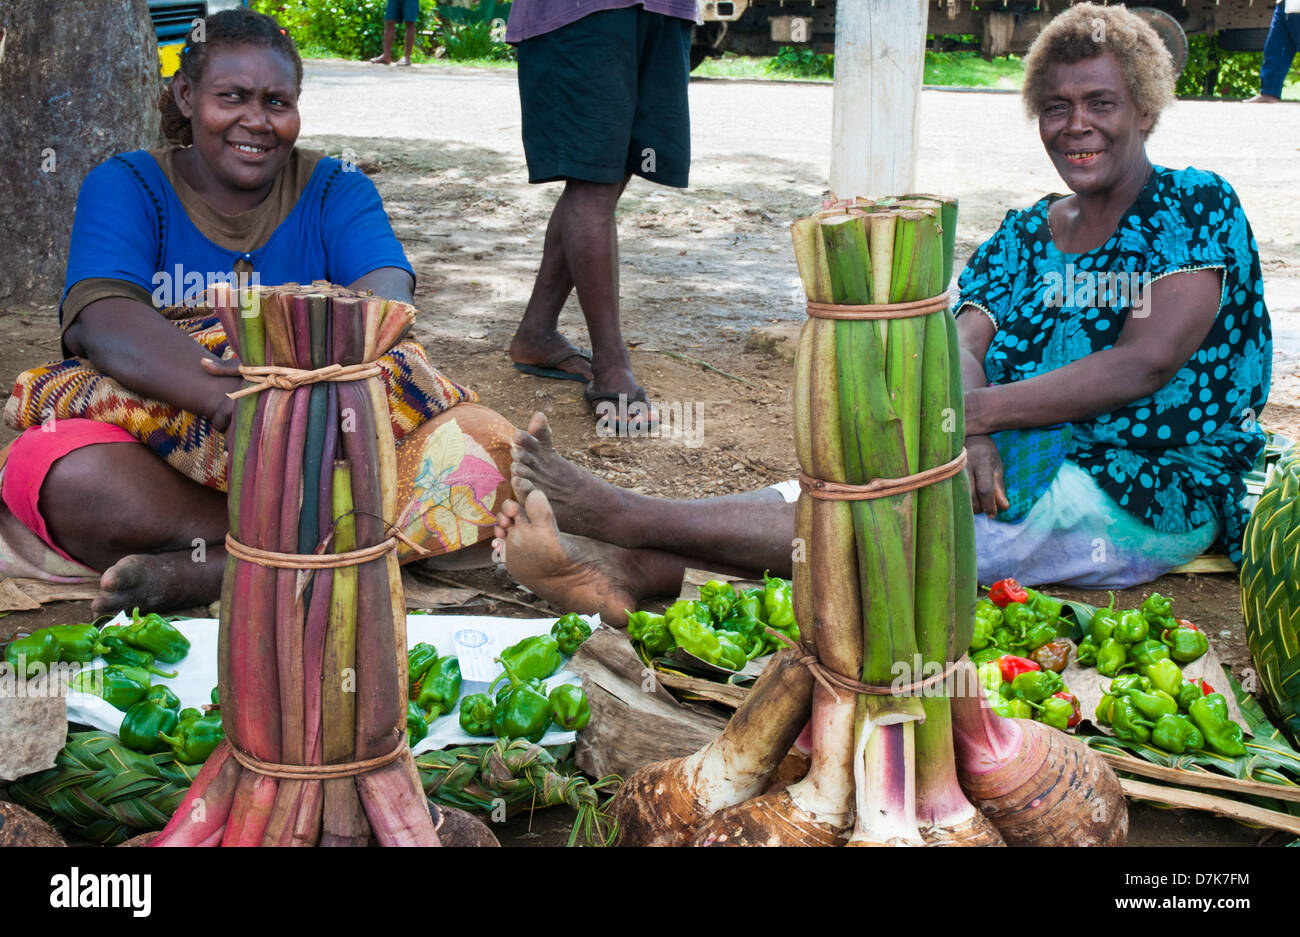 Samedi matin, marché de fruits et légumes sur le bord de l'eau à Kavieng, New Ireland, Papouasie Nouvelle Guinée Banque D'Images